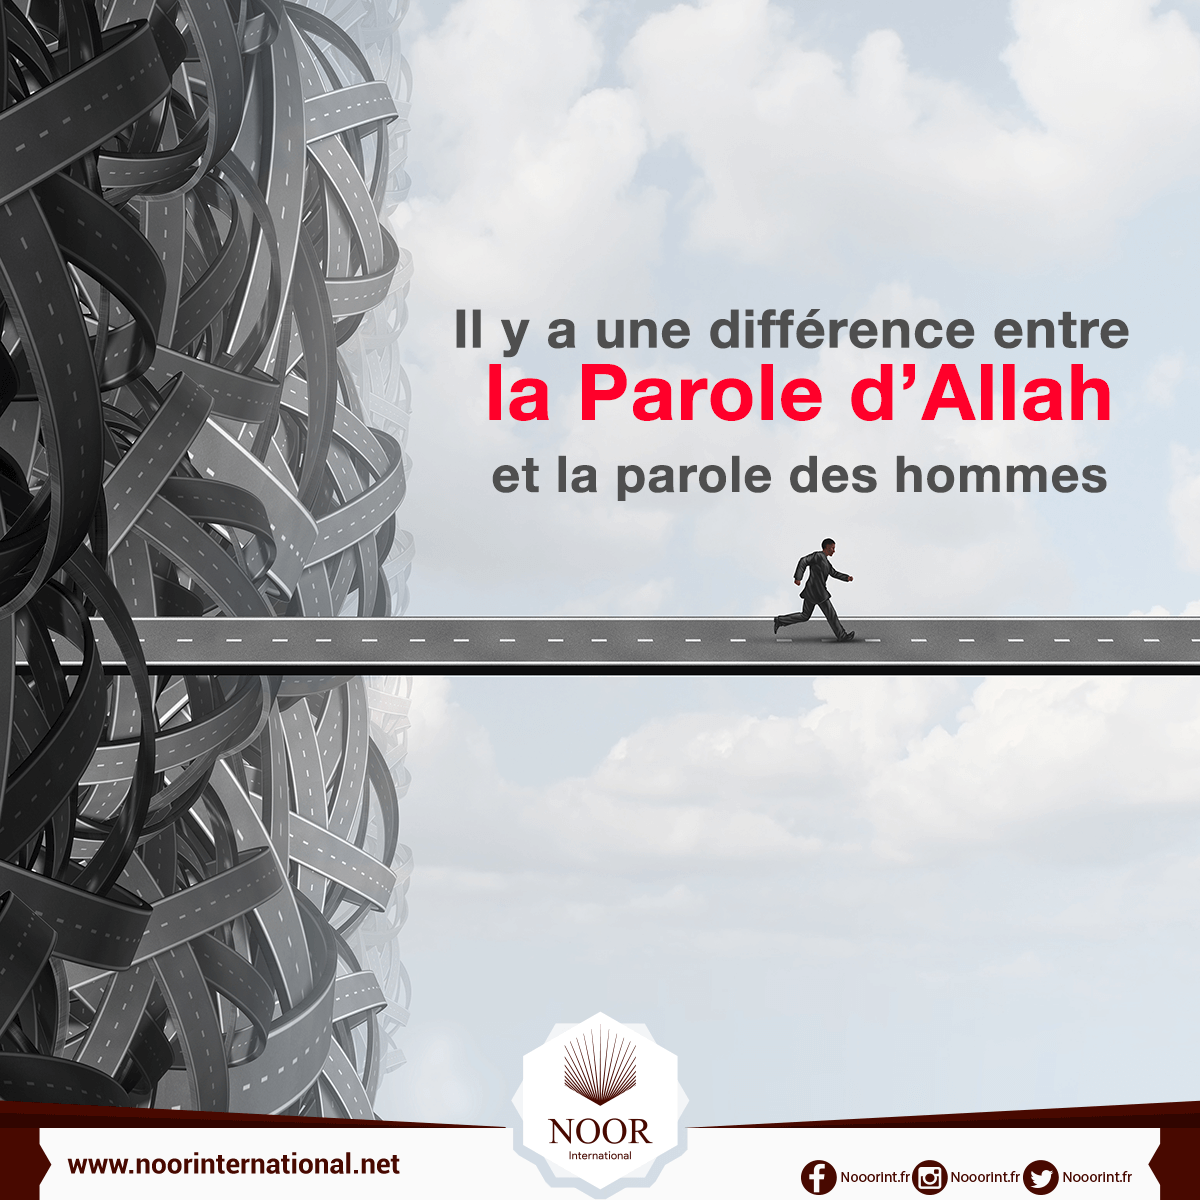 Il y a une différence entre la Parole d’Allah et la parole des hommes